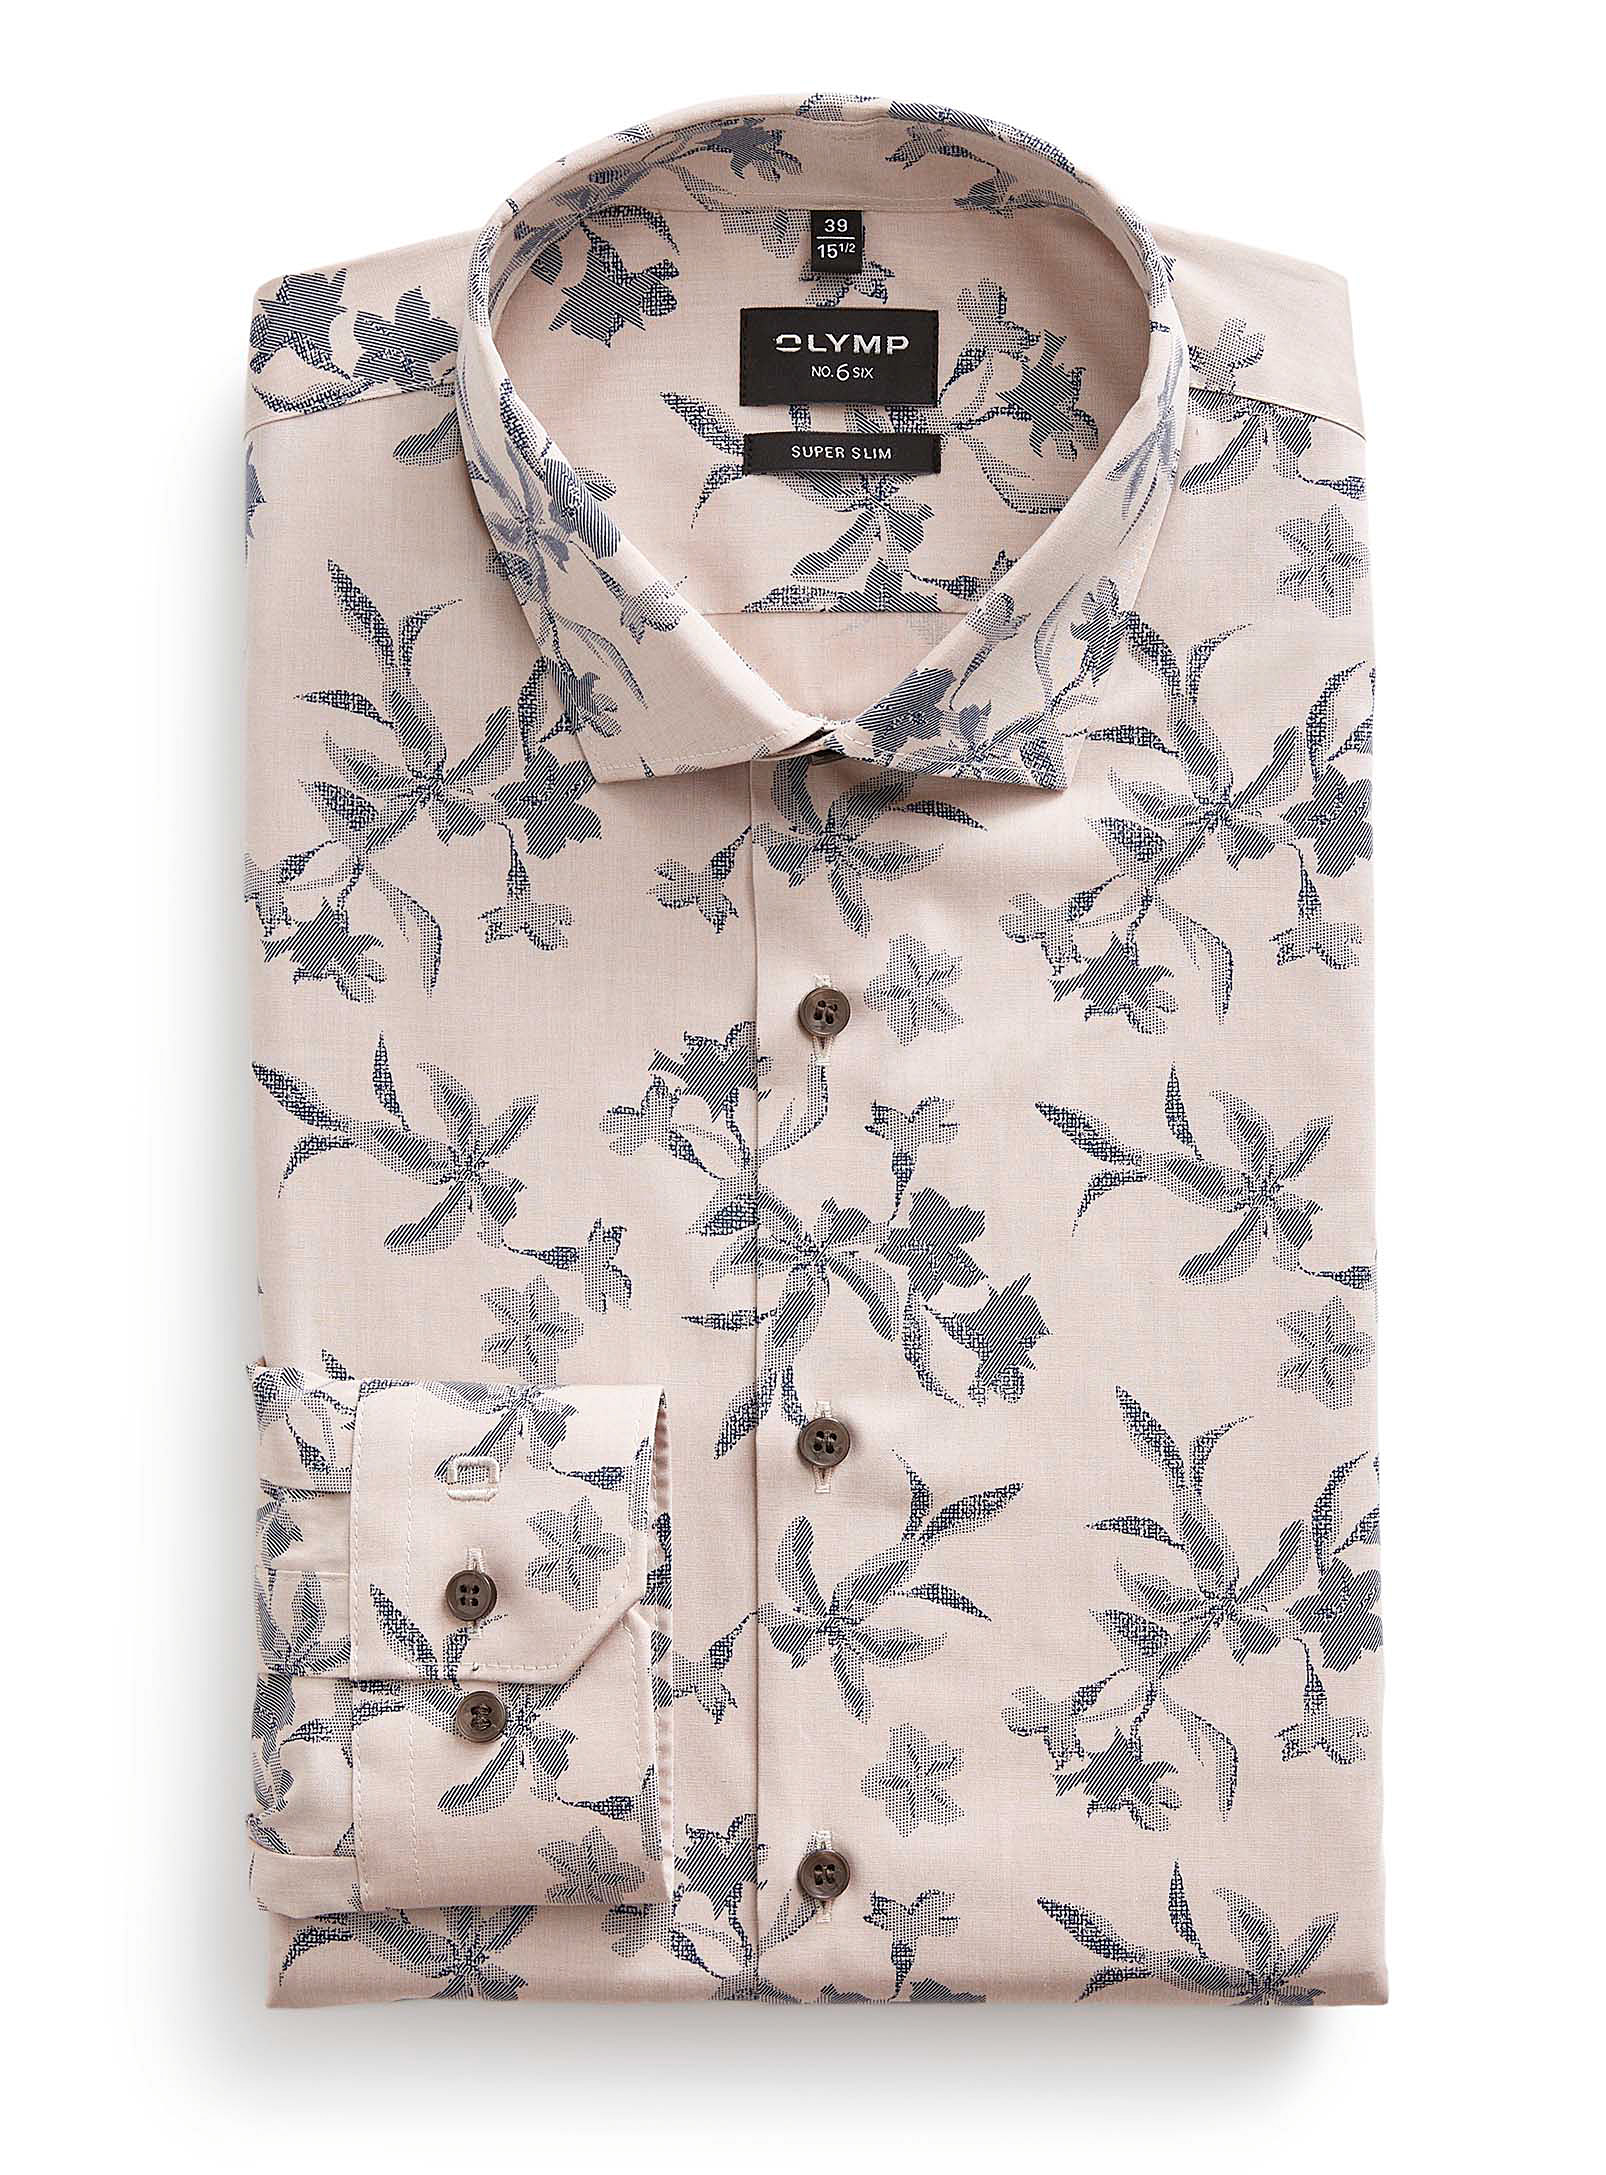 Olymp - Men's Hatched flower shirt Slim fit